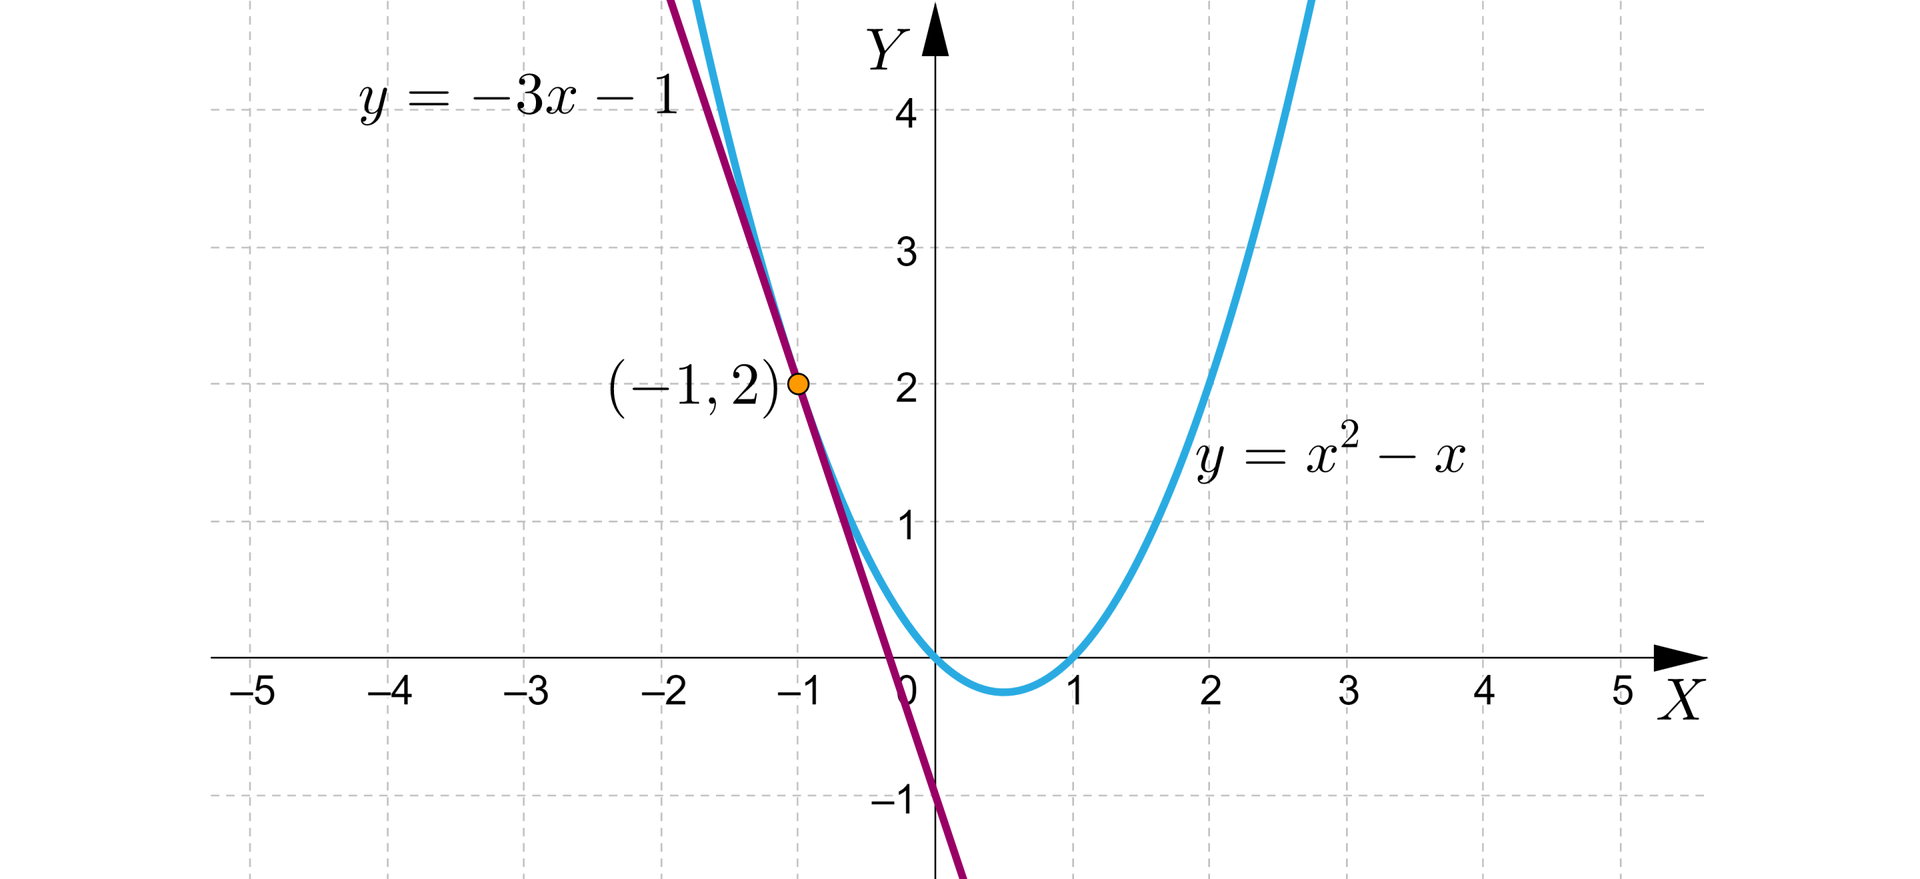 Grafika przedstawia układ równań z poziomą osią x od minus pięciu do pięciu  i pionową osią y od minus jeden do czterech. Na płaszczyźnie znajdują się dwa wykresy. Pierwszy z nich to ukośna prosta o równaniu y=-3x-1 która zaczyna się w drugiej ćwiartce układu, przechodzi przez trzecią ćwiartkę i przecinając oś y w punkcie początek nawiasu, 0, minus 1, zamknięcie nawiasu. Drugi wykres to parabola o ramionach skierowanych do góry i równaniu y=x2−x. Wierzchołek paraboli znajduje się w czwartej ćwiartce.  Wykresy przecinają się w jednym punkcie, który został zaznaczony zamalowaną kropką. Współrzędne tego punktu to początek nawiasu, minus 1, 2, zamknięcie nawiasu.